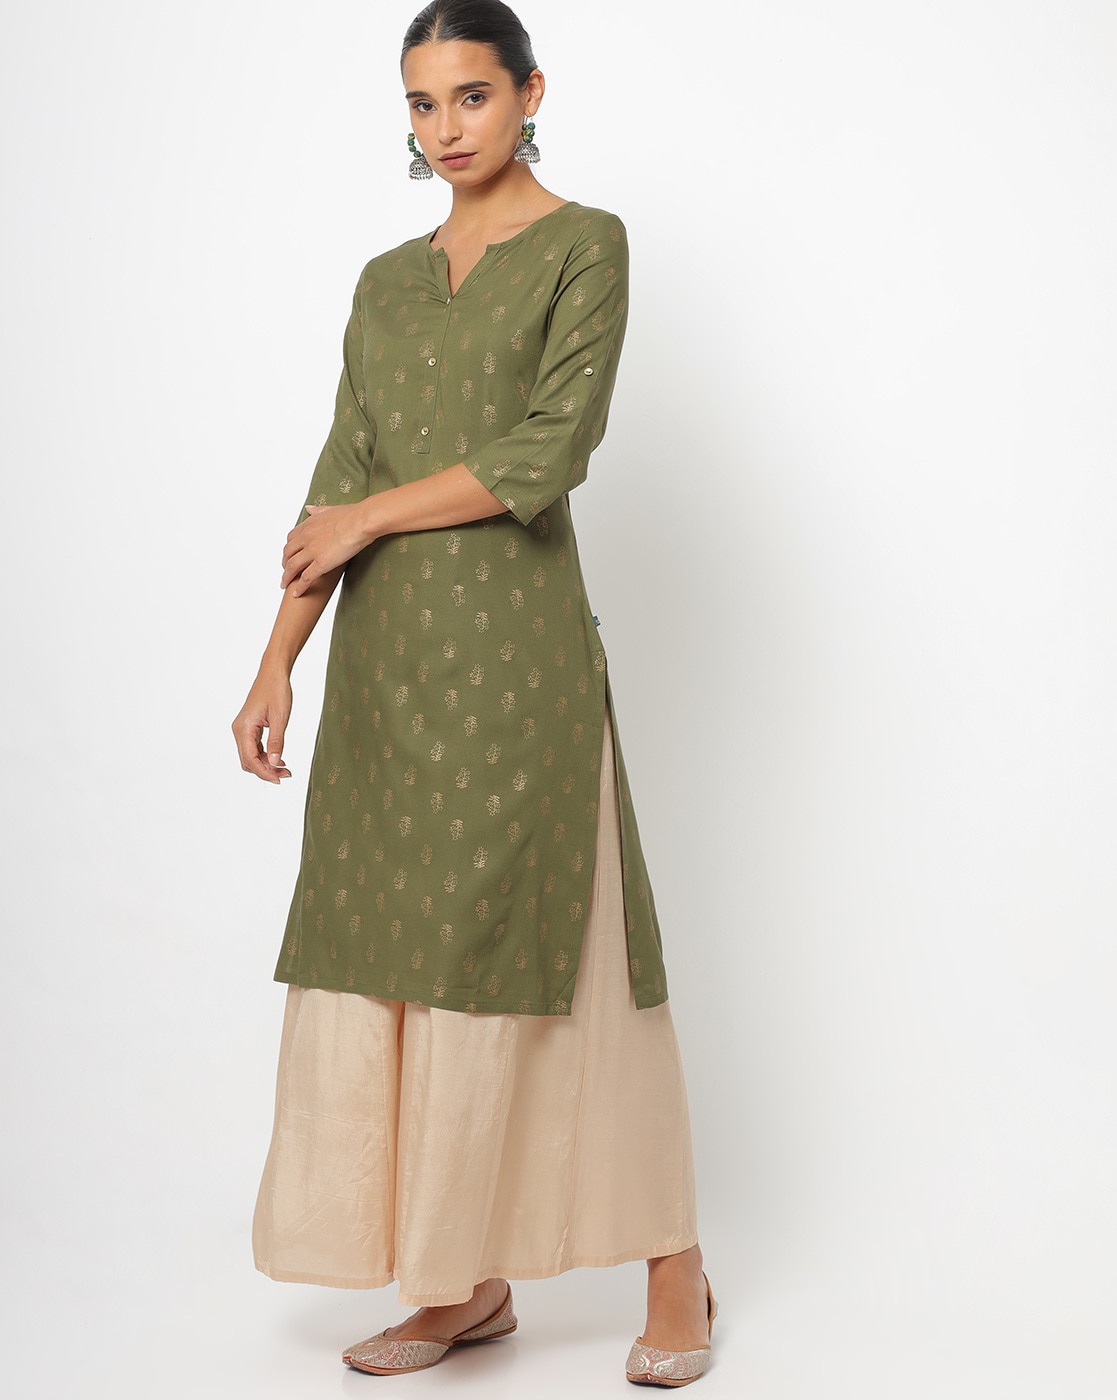 Shop Green Color Designer Saree Online at Best Prices